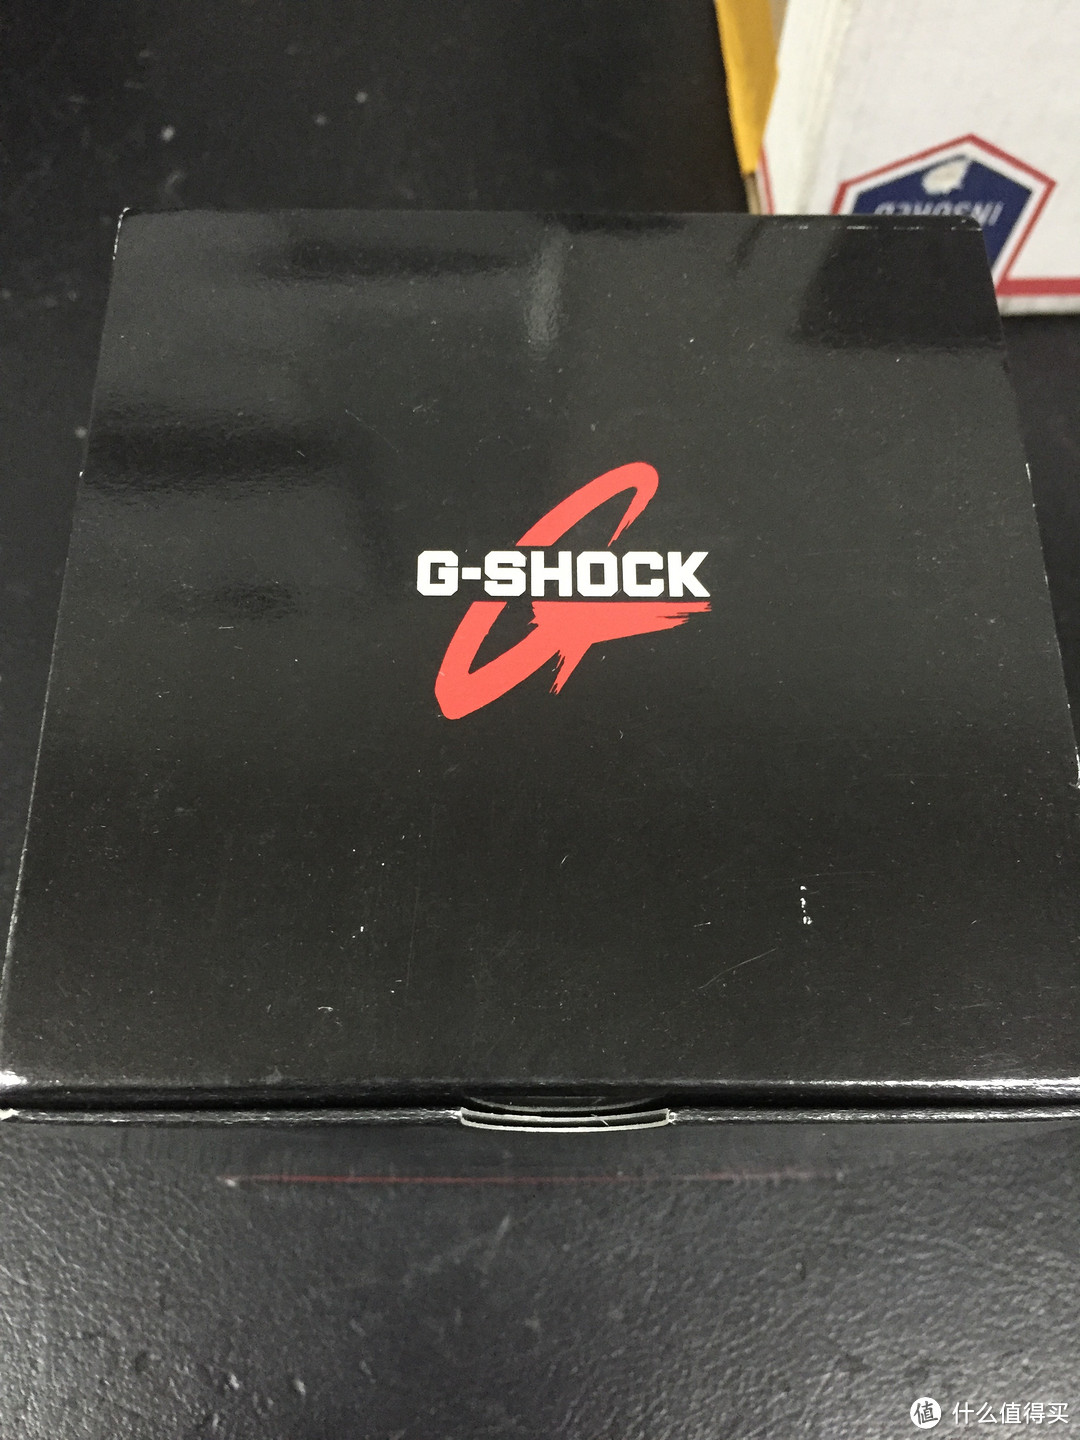 人生第一款CASIO  G-Shock系列手表GWA1000FC-1A4